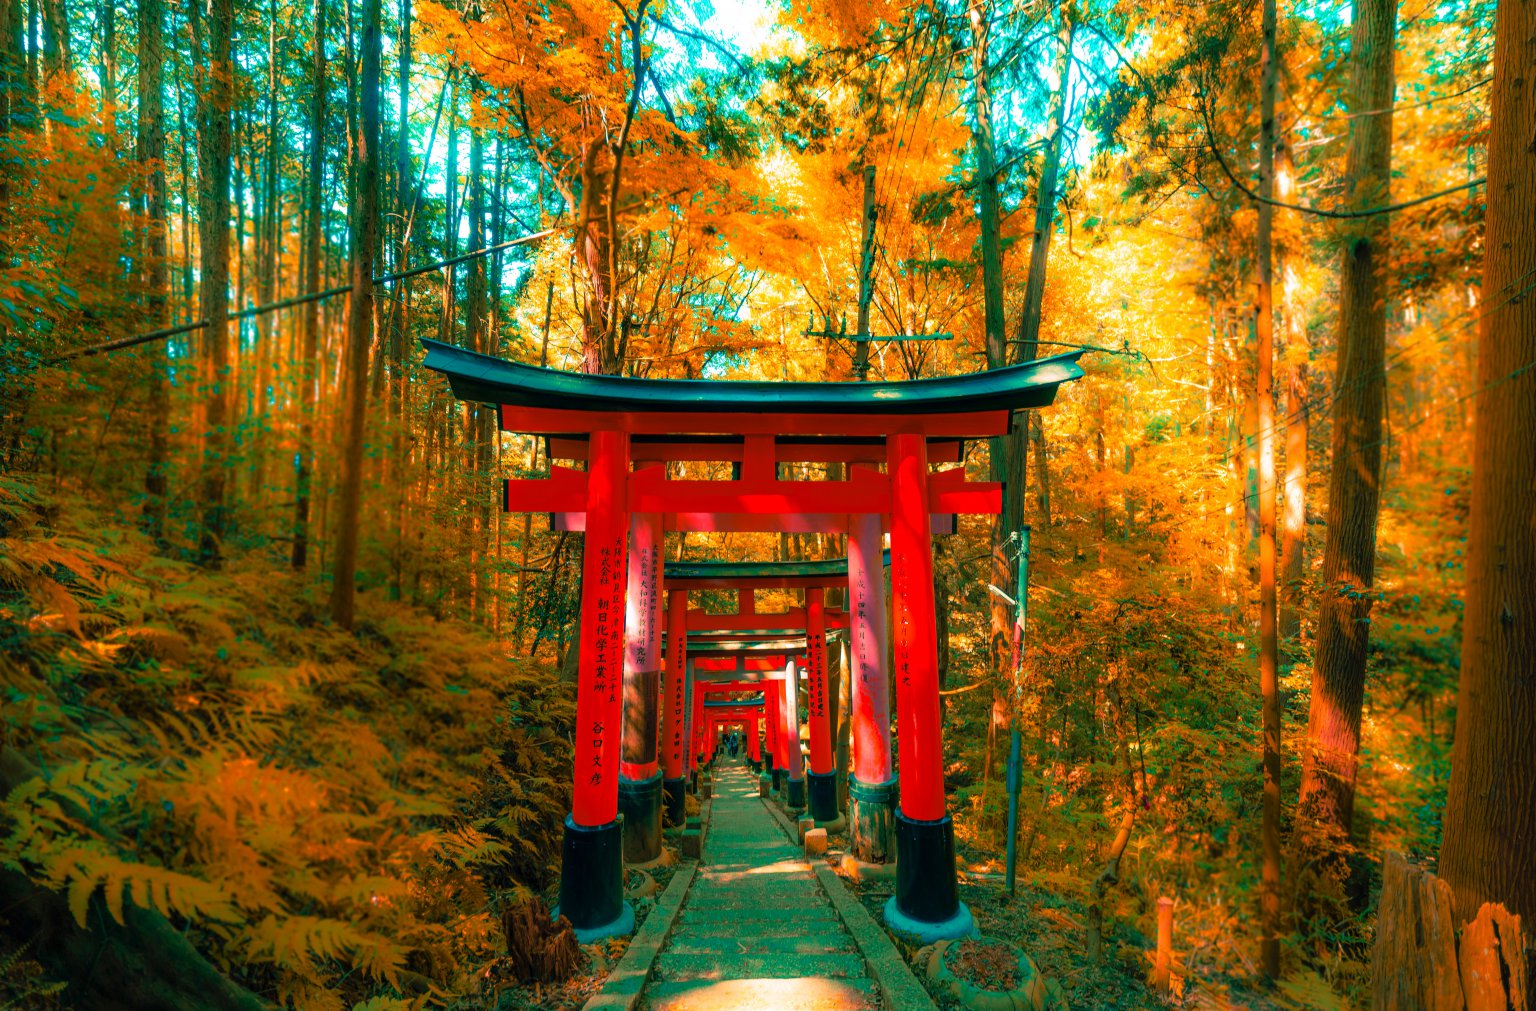 Top 25 Popular Tourist Attractions in Japan – Attractive Scenes